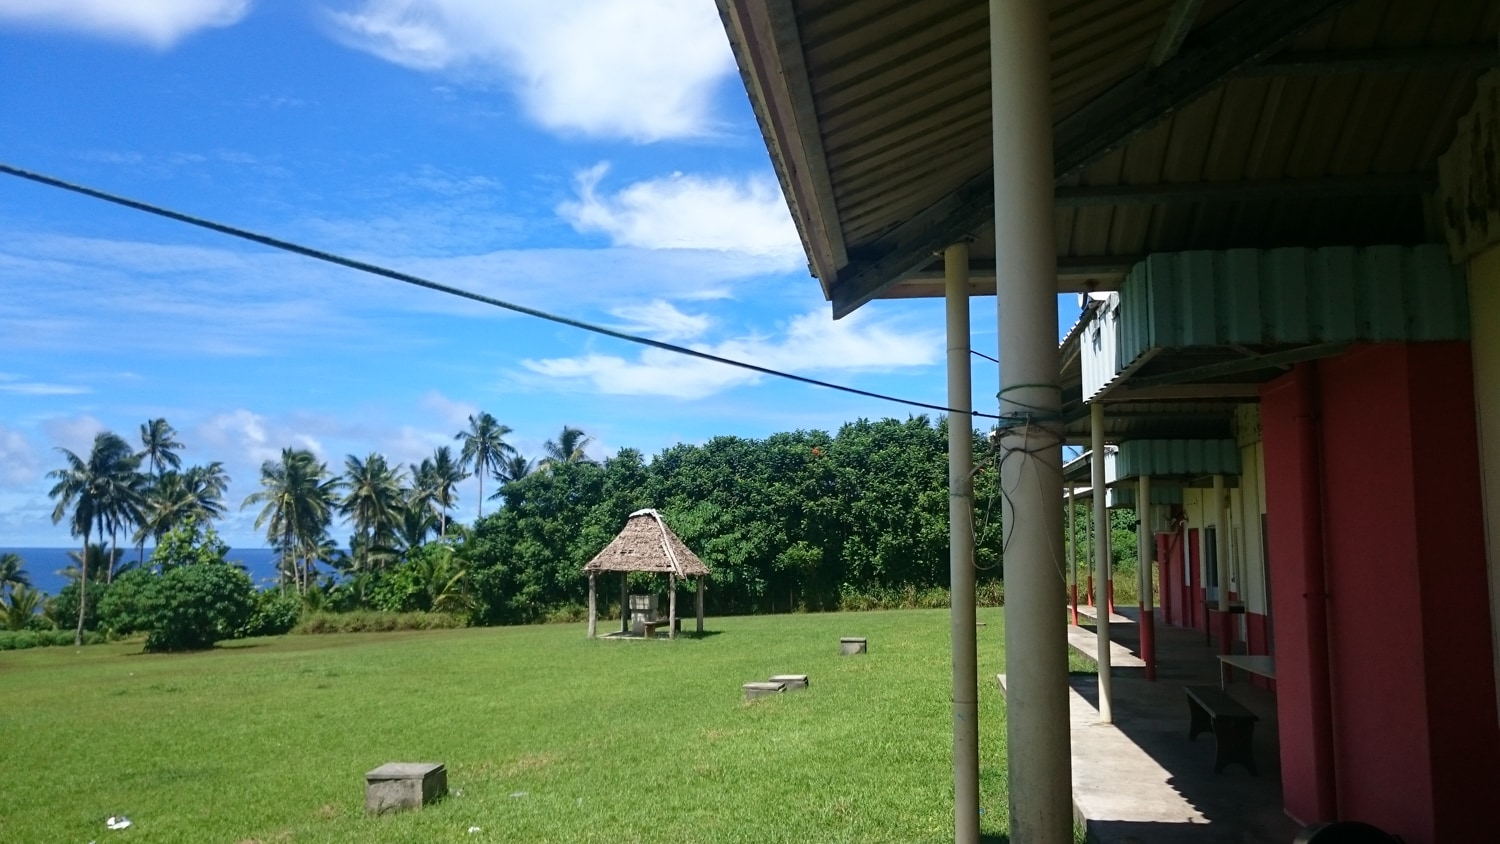 Travailler à Wallis et Futuna en tant qu'infirmière : le regard de Sophie